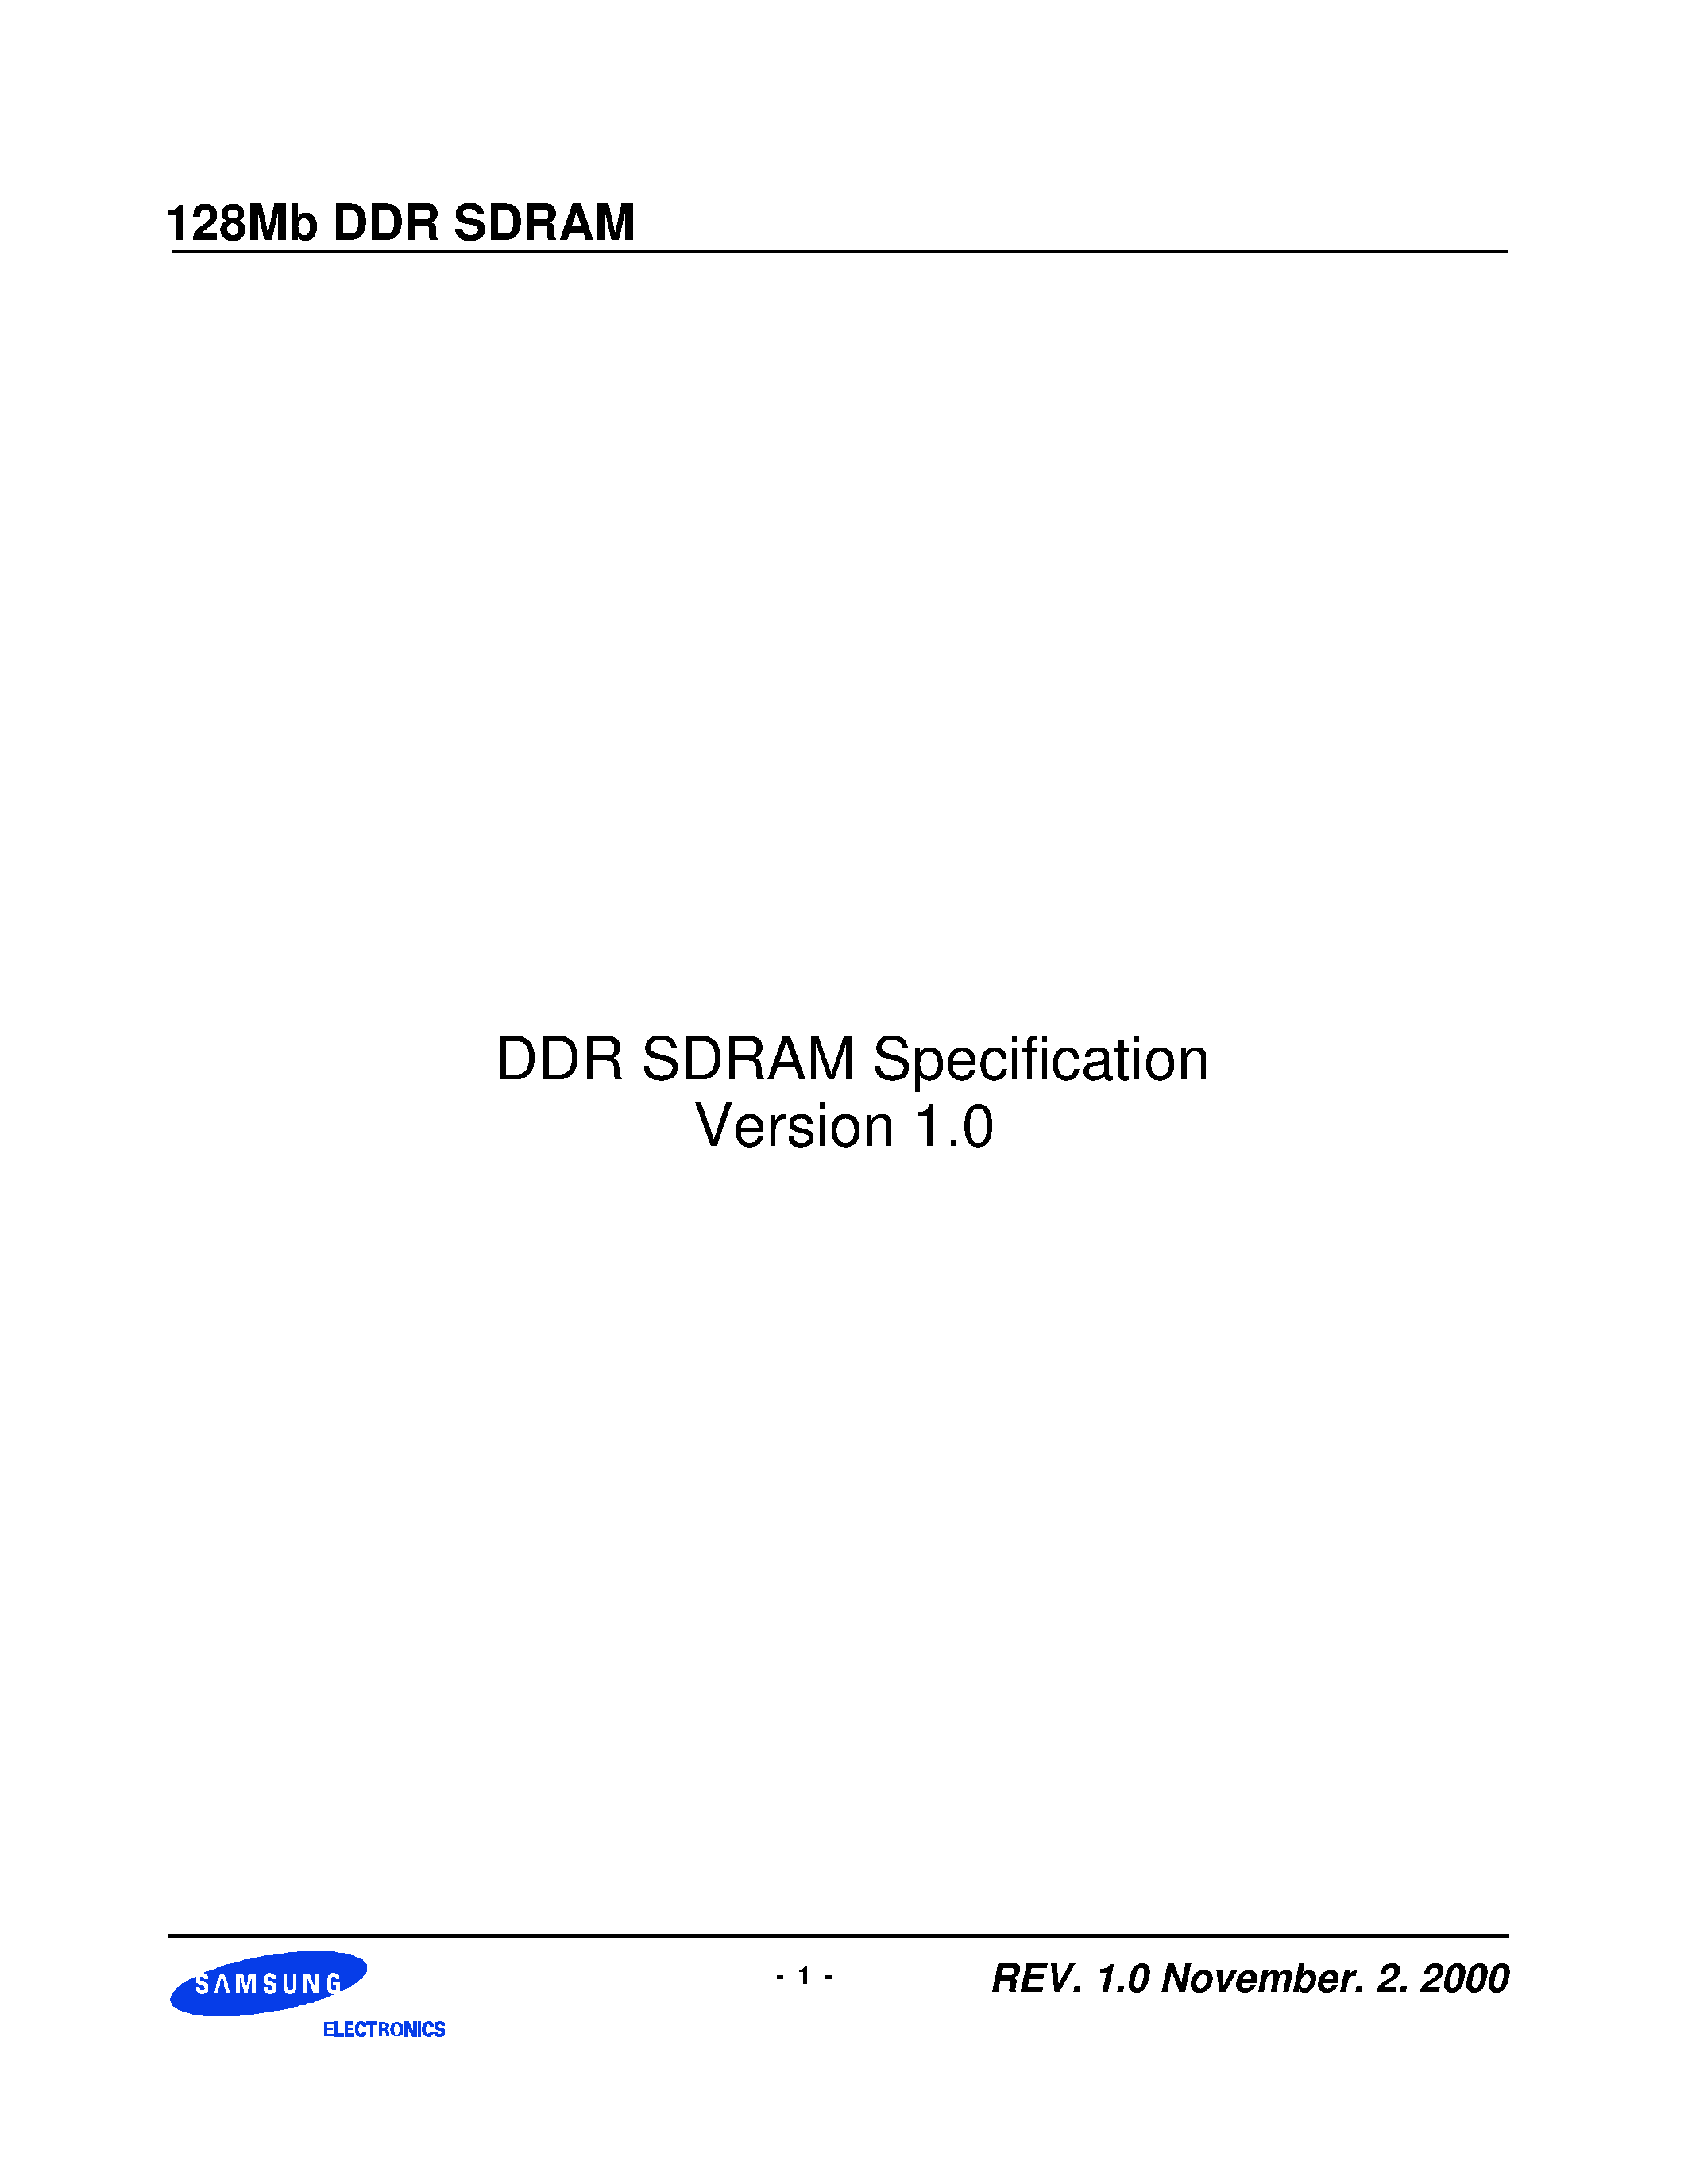 Даташит KM44L32031BT-G(L)Y - DDR SDRAM Specification Version 1.0 страница 1